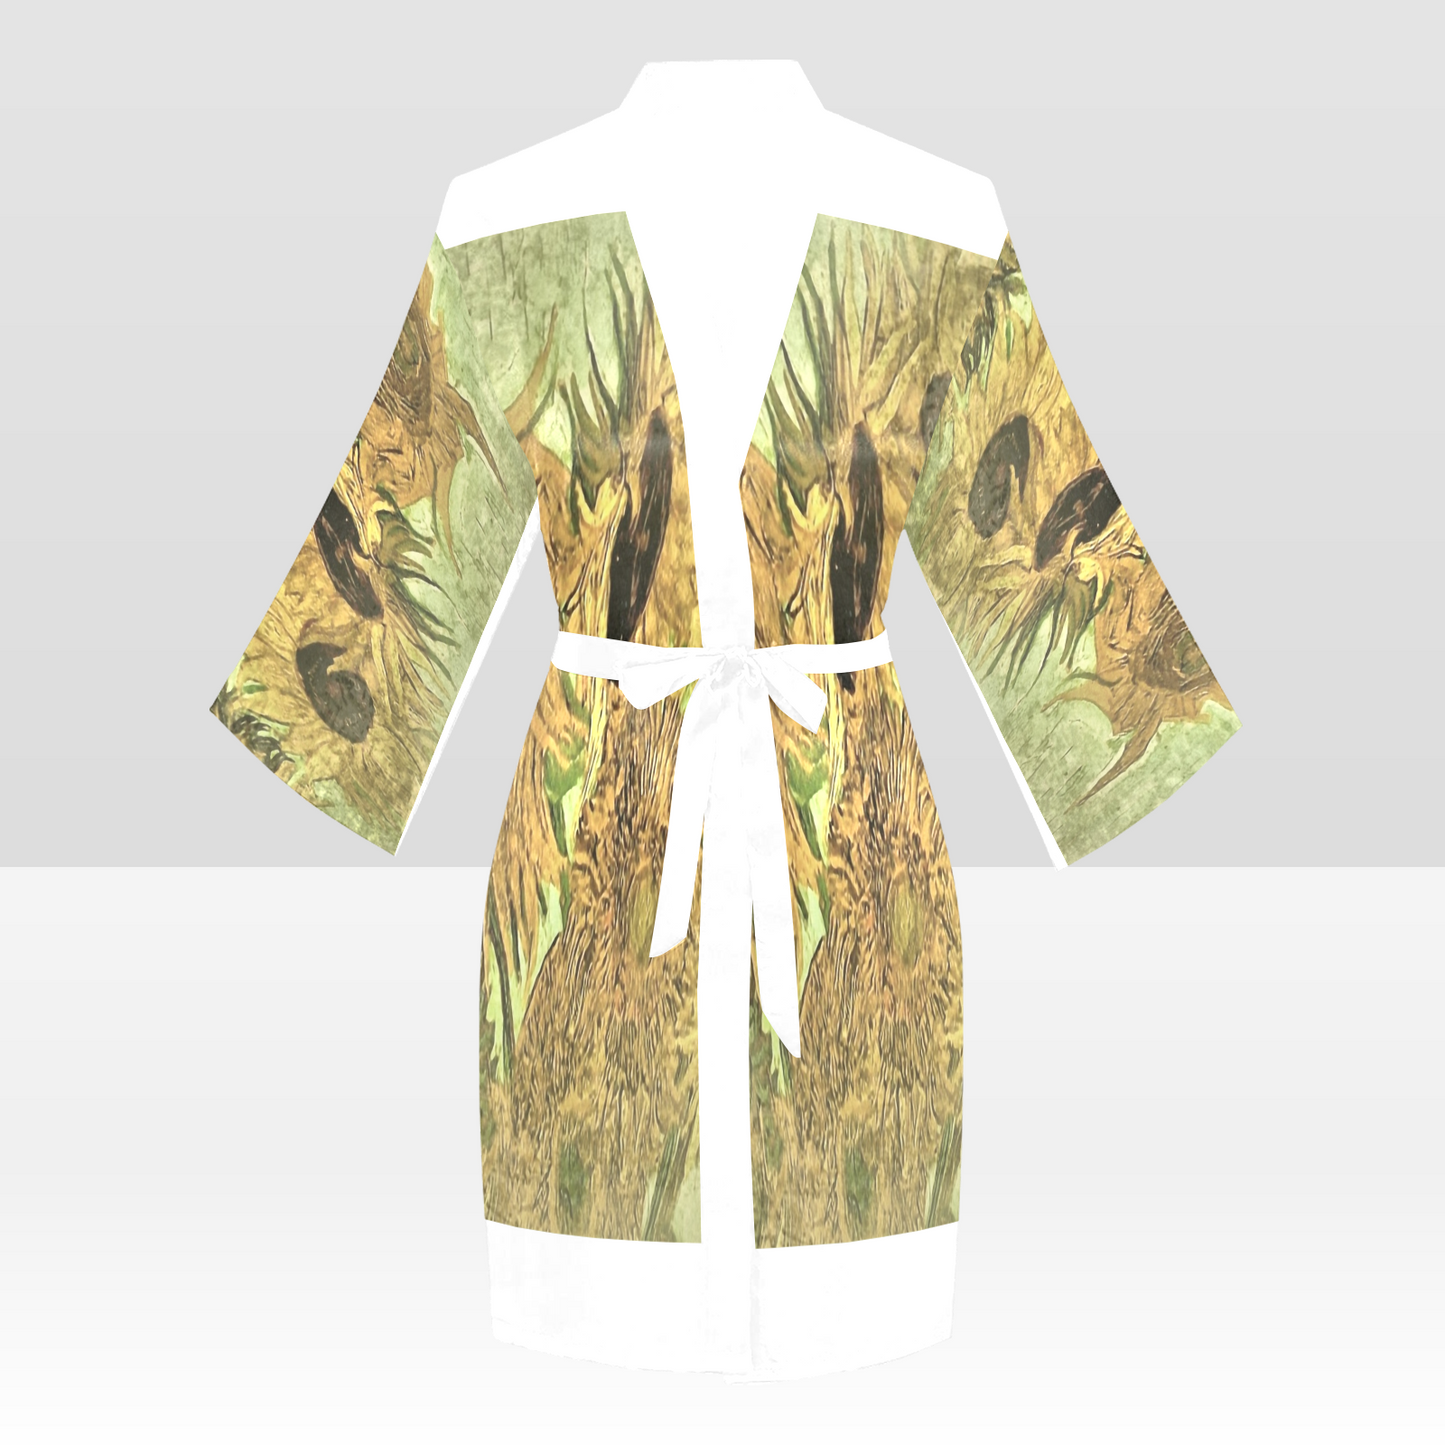 Vintage Floral Kimono Robe, Black or White Trim, Sizes XS to 2XL, Design 48x